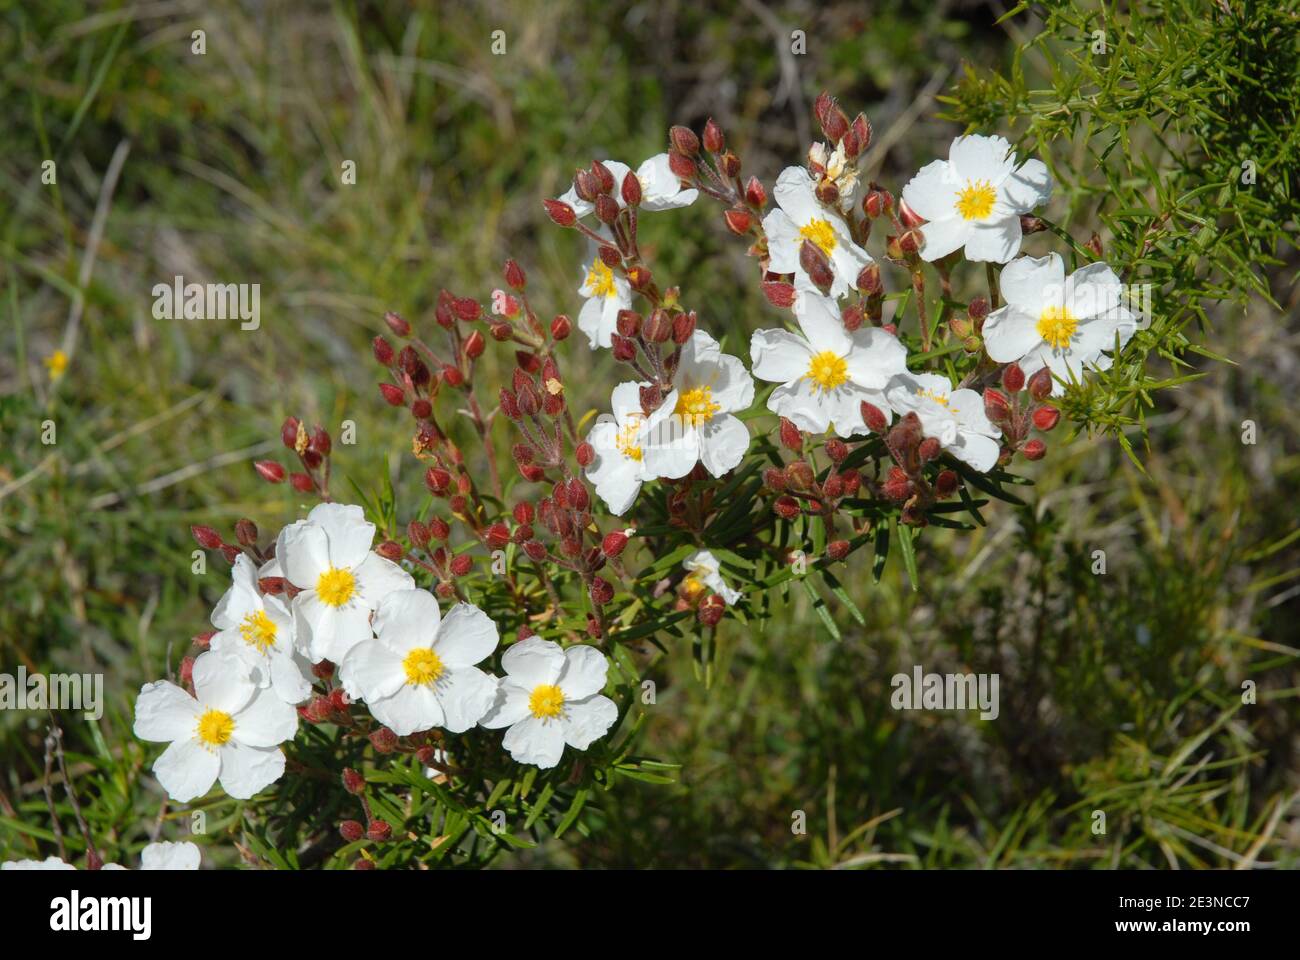 Belles fleurs blanches de cistus à feuilles étroites, également connu sous le nom de Cistus monspeliensis, en croissance sauvage en Espagne Banque D'Images